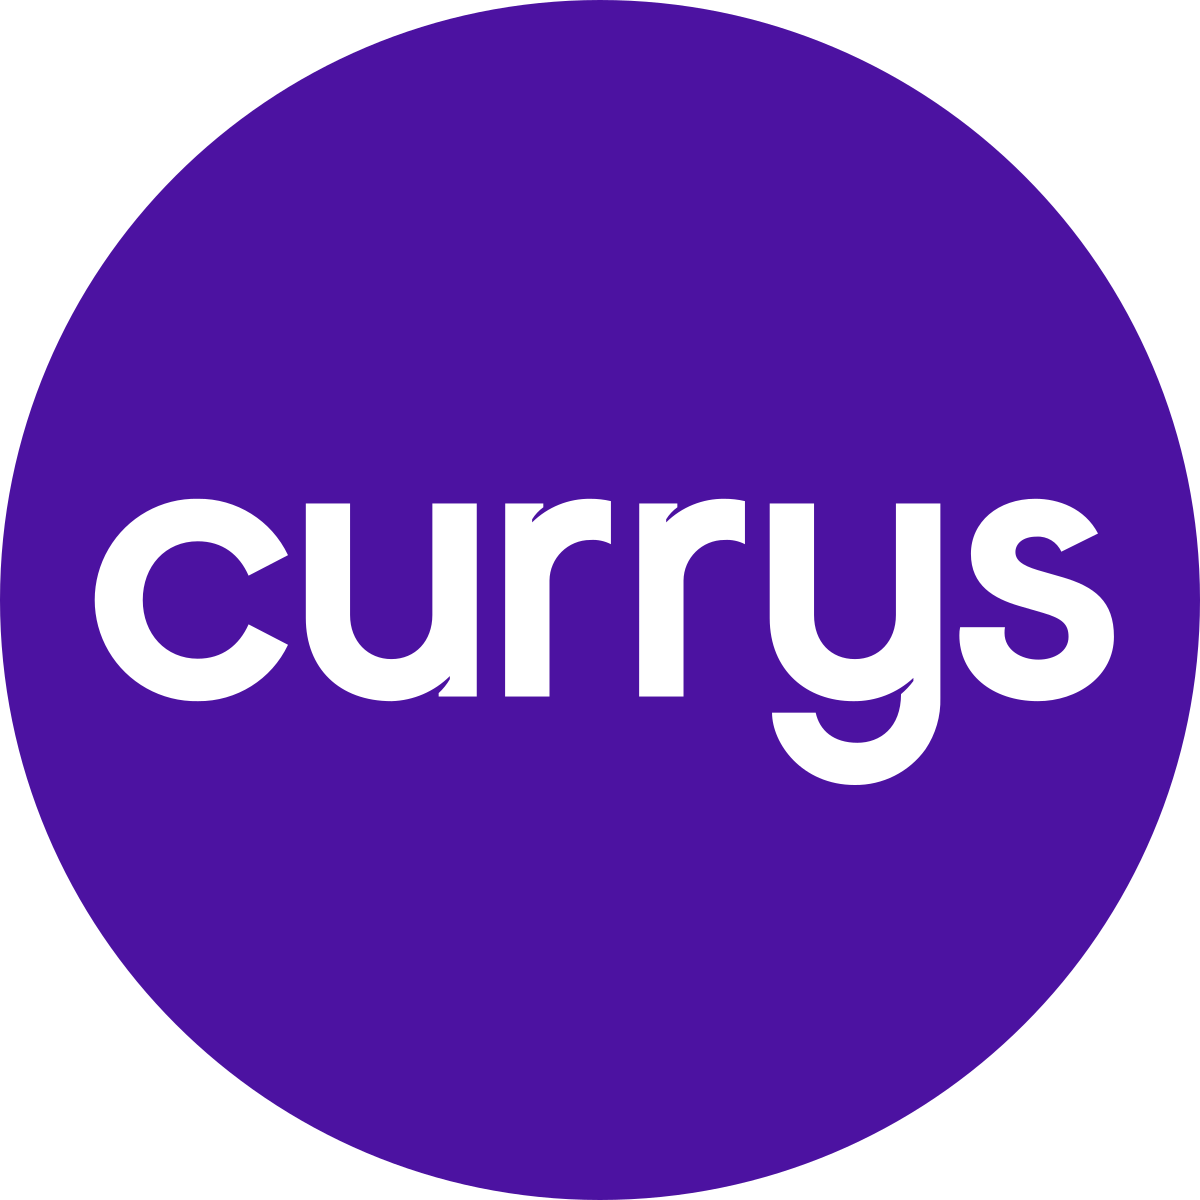 Currys_Logo.svg